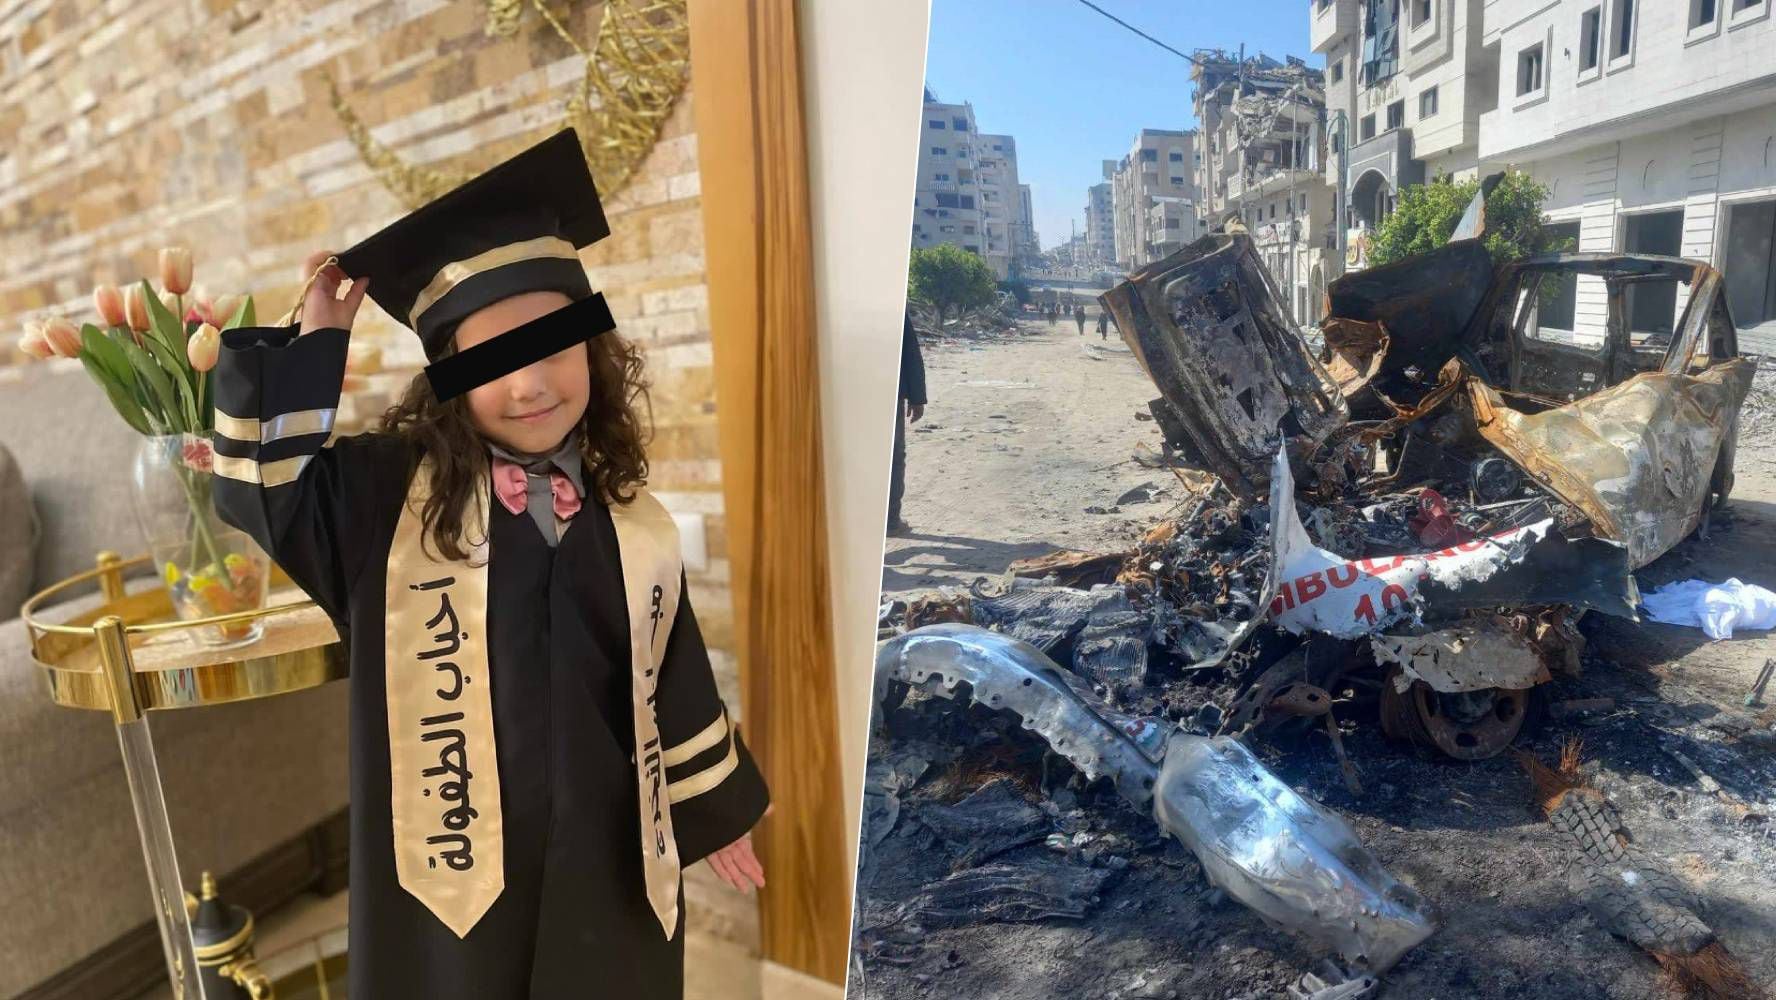 El asesinato de la niña Hind Rajab por soldados israelíes: ONU denuncia que fue crimen de guerra